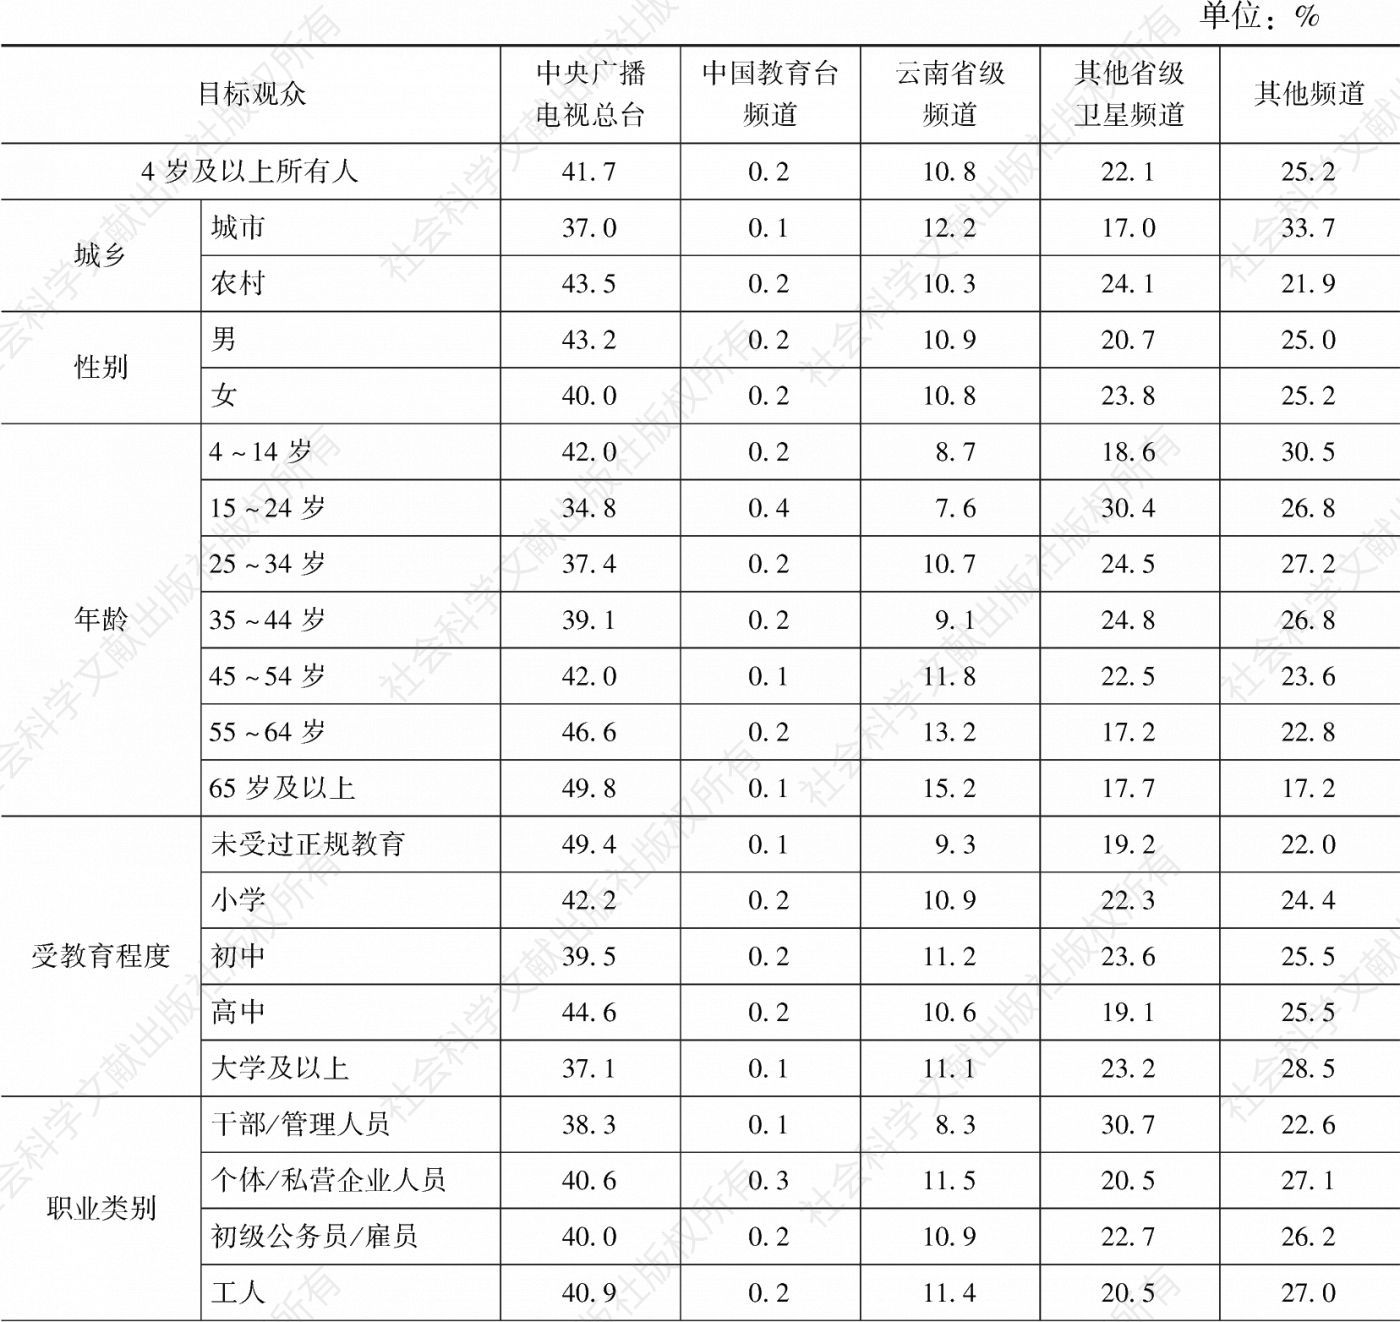 表3.25.2 2020年云南市场各类频道在各目标观众中的市场占有率